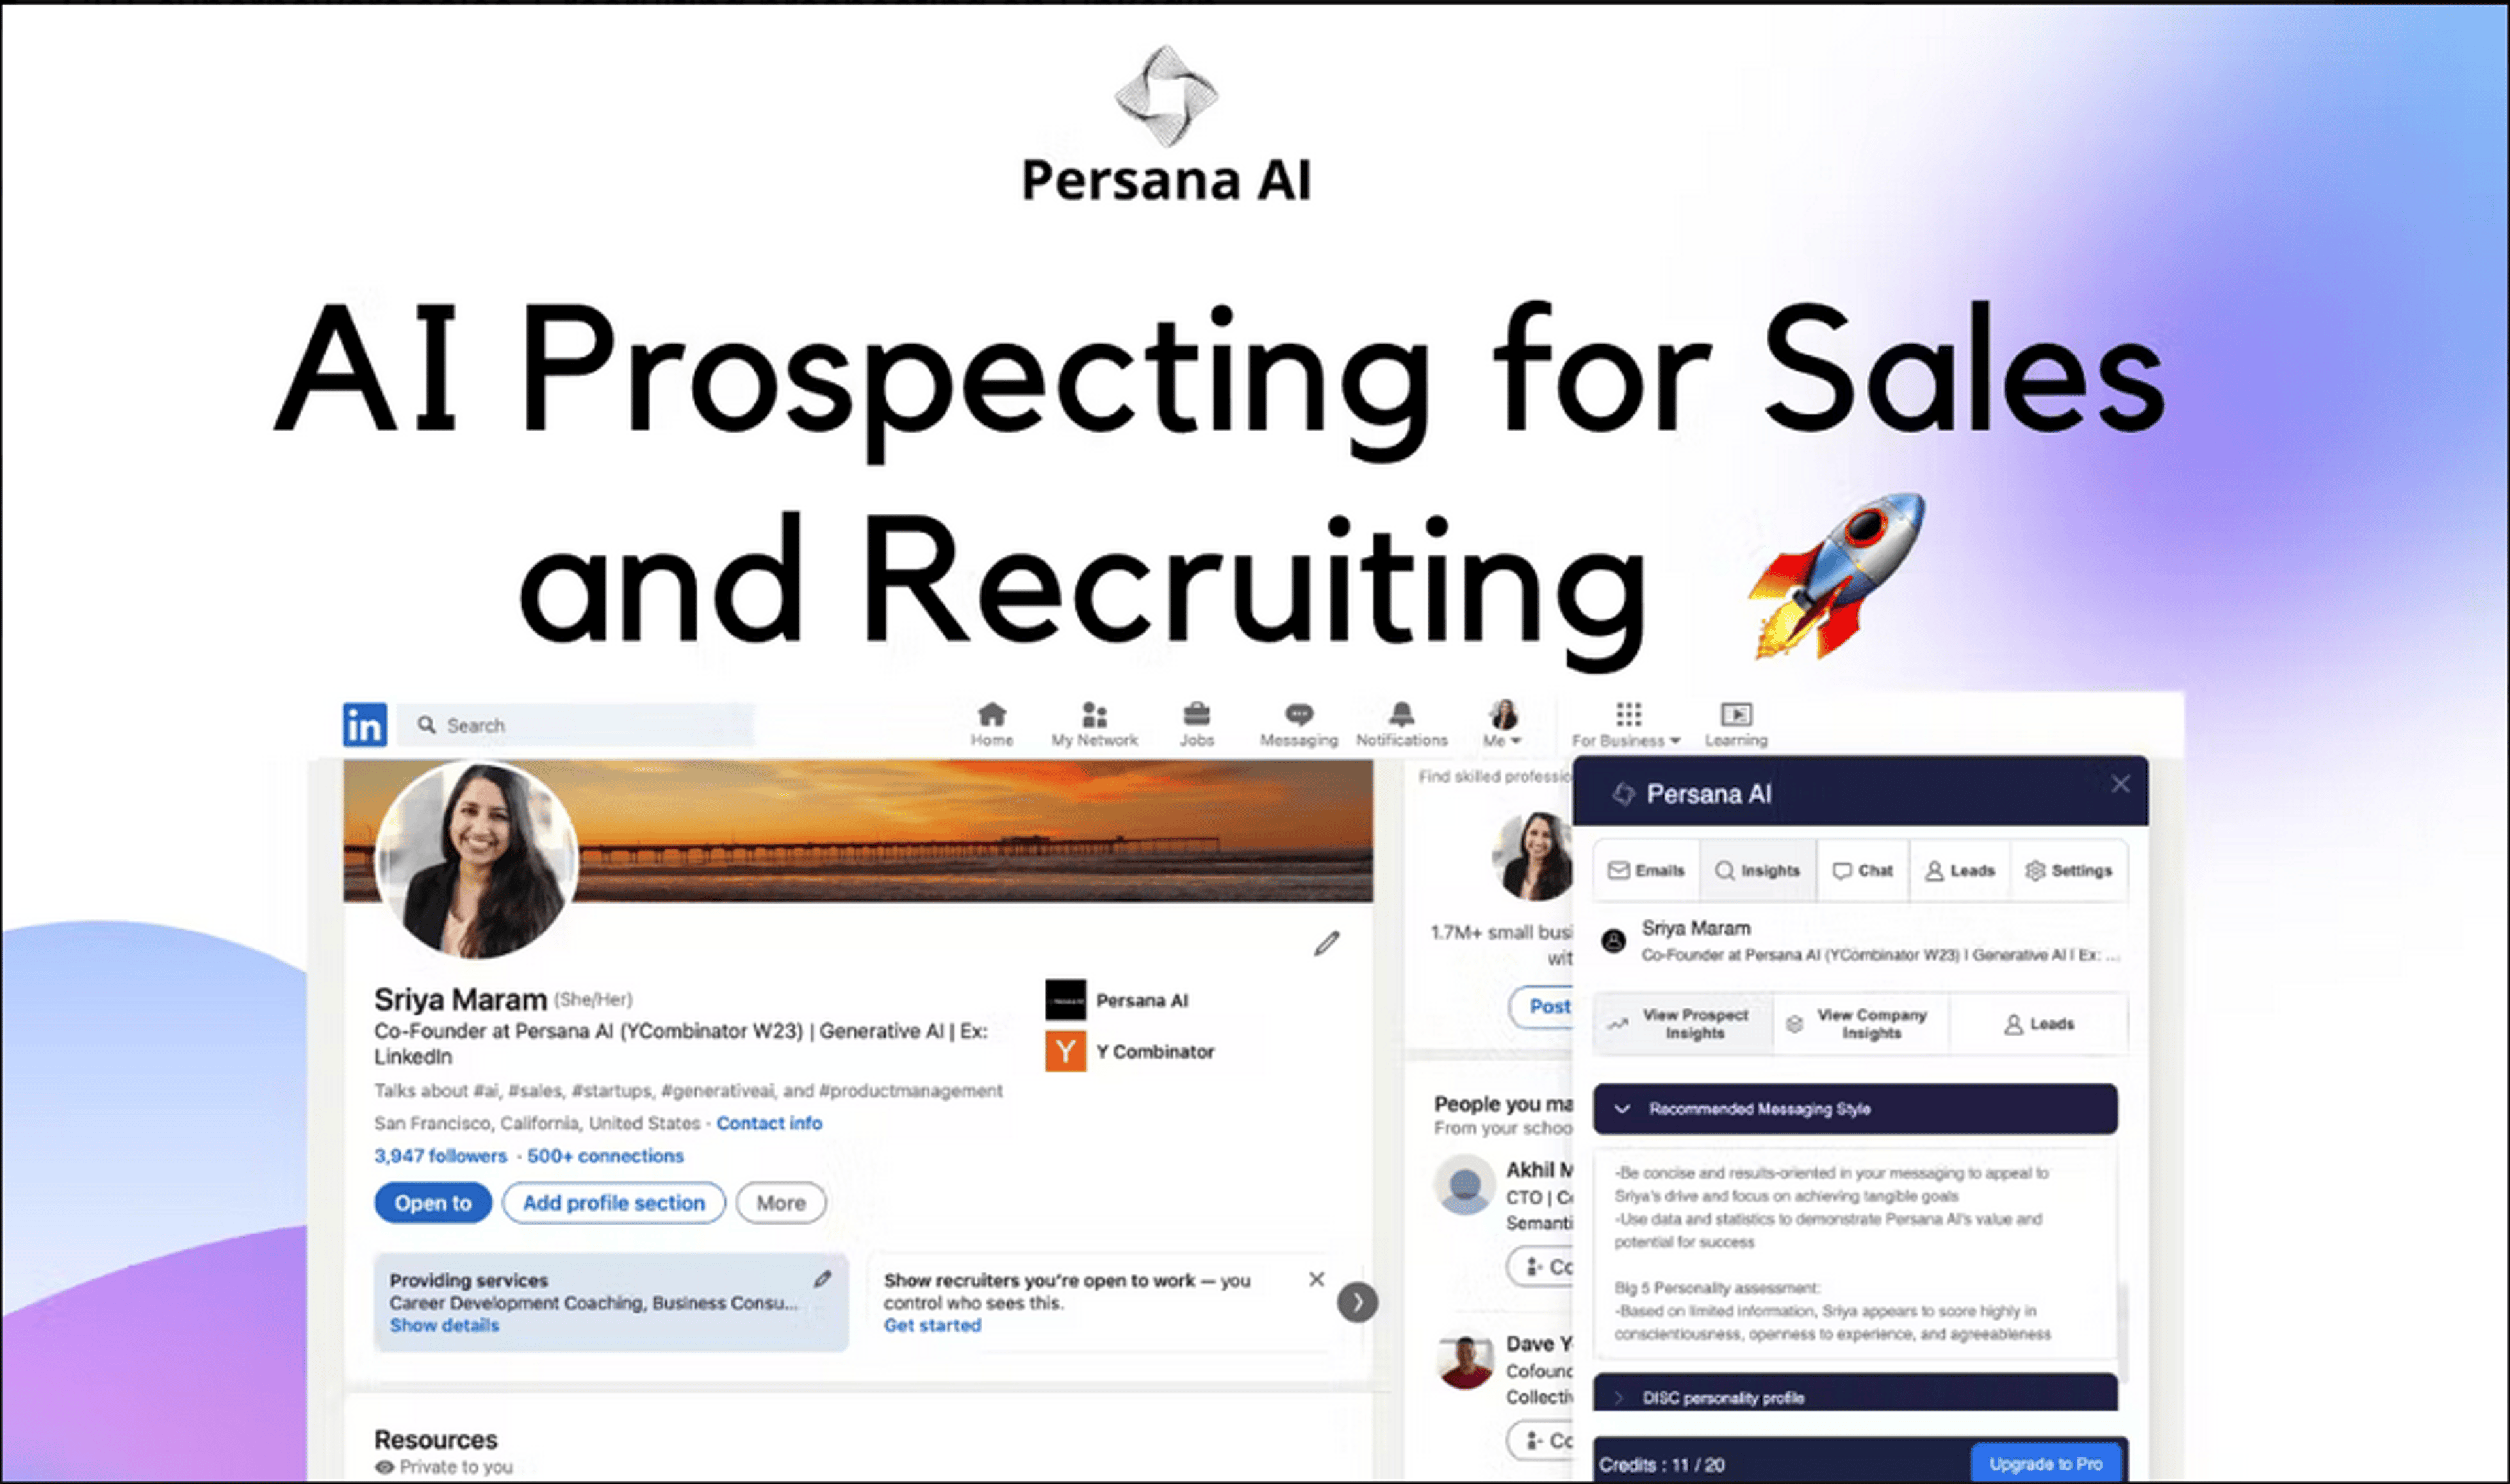 Prospect with Persana AI